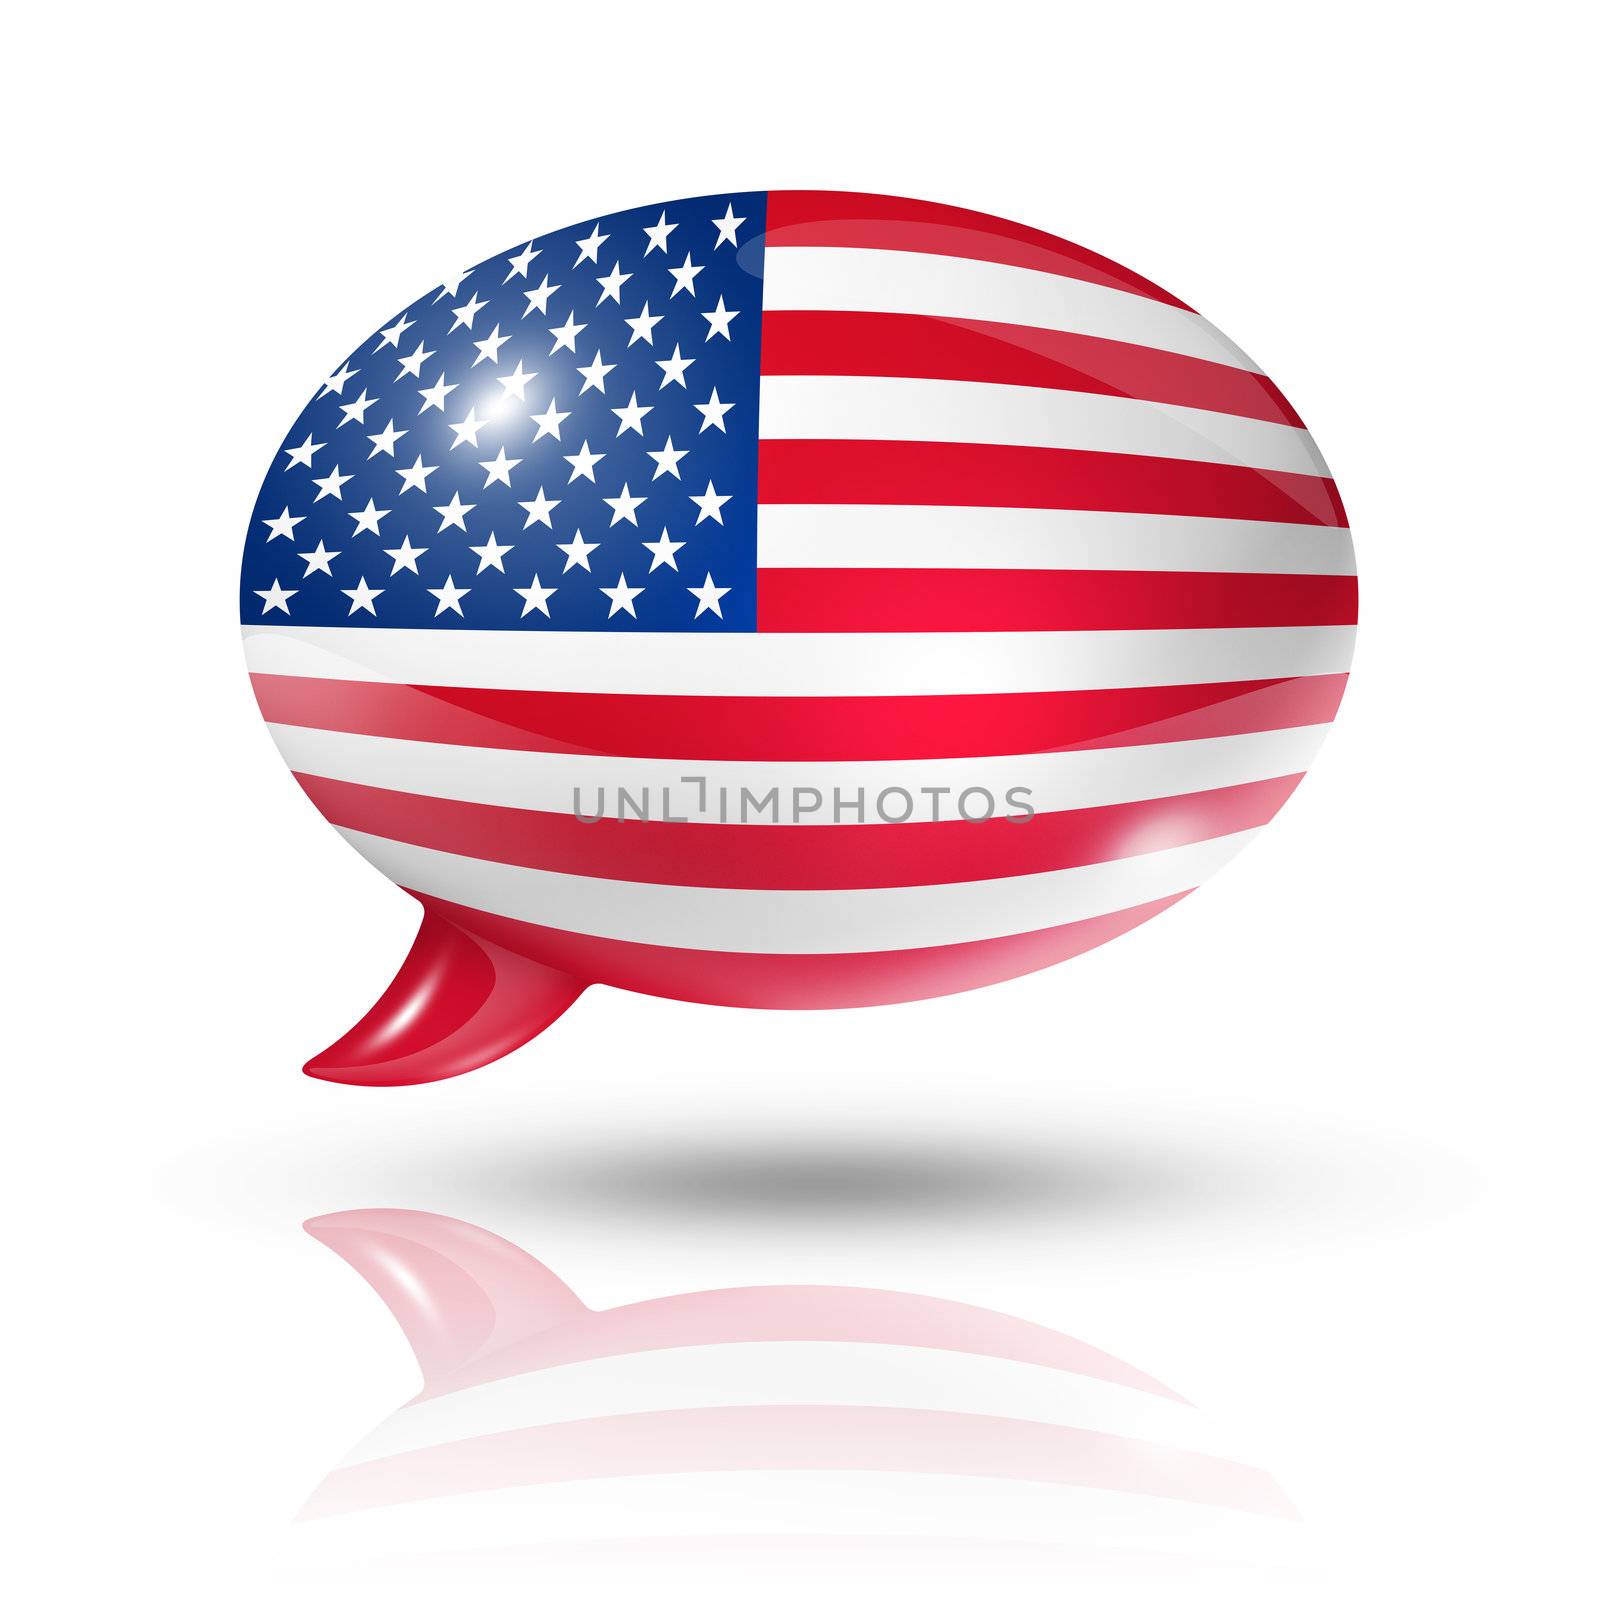 USA speech bubble by daboost